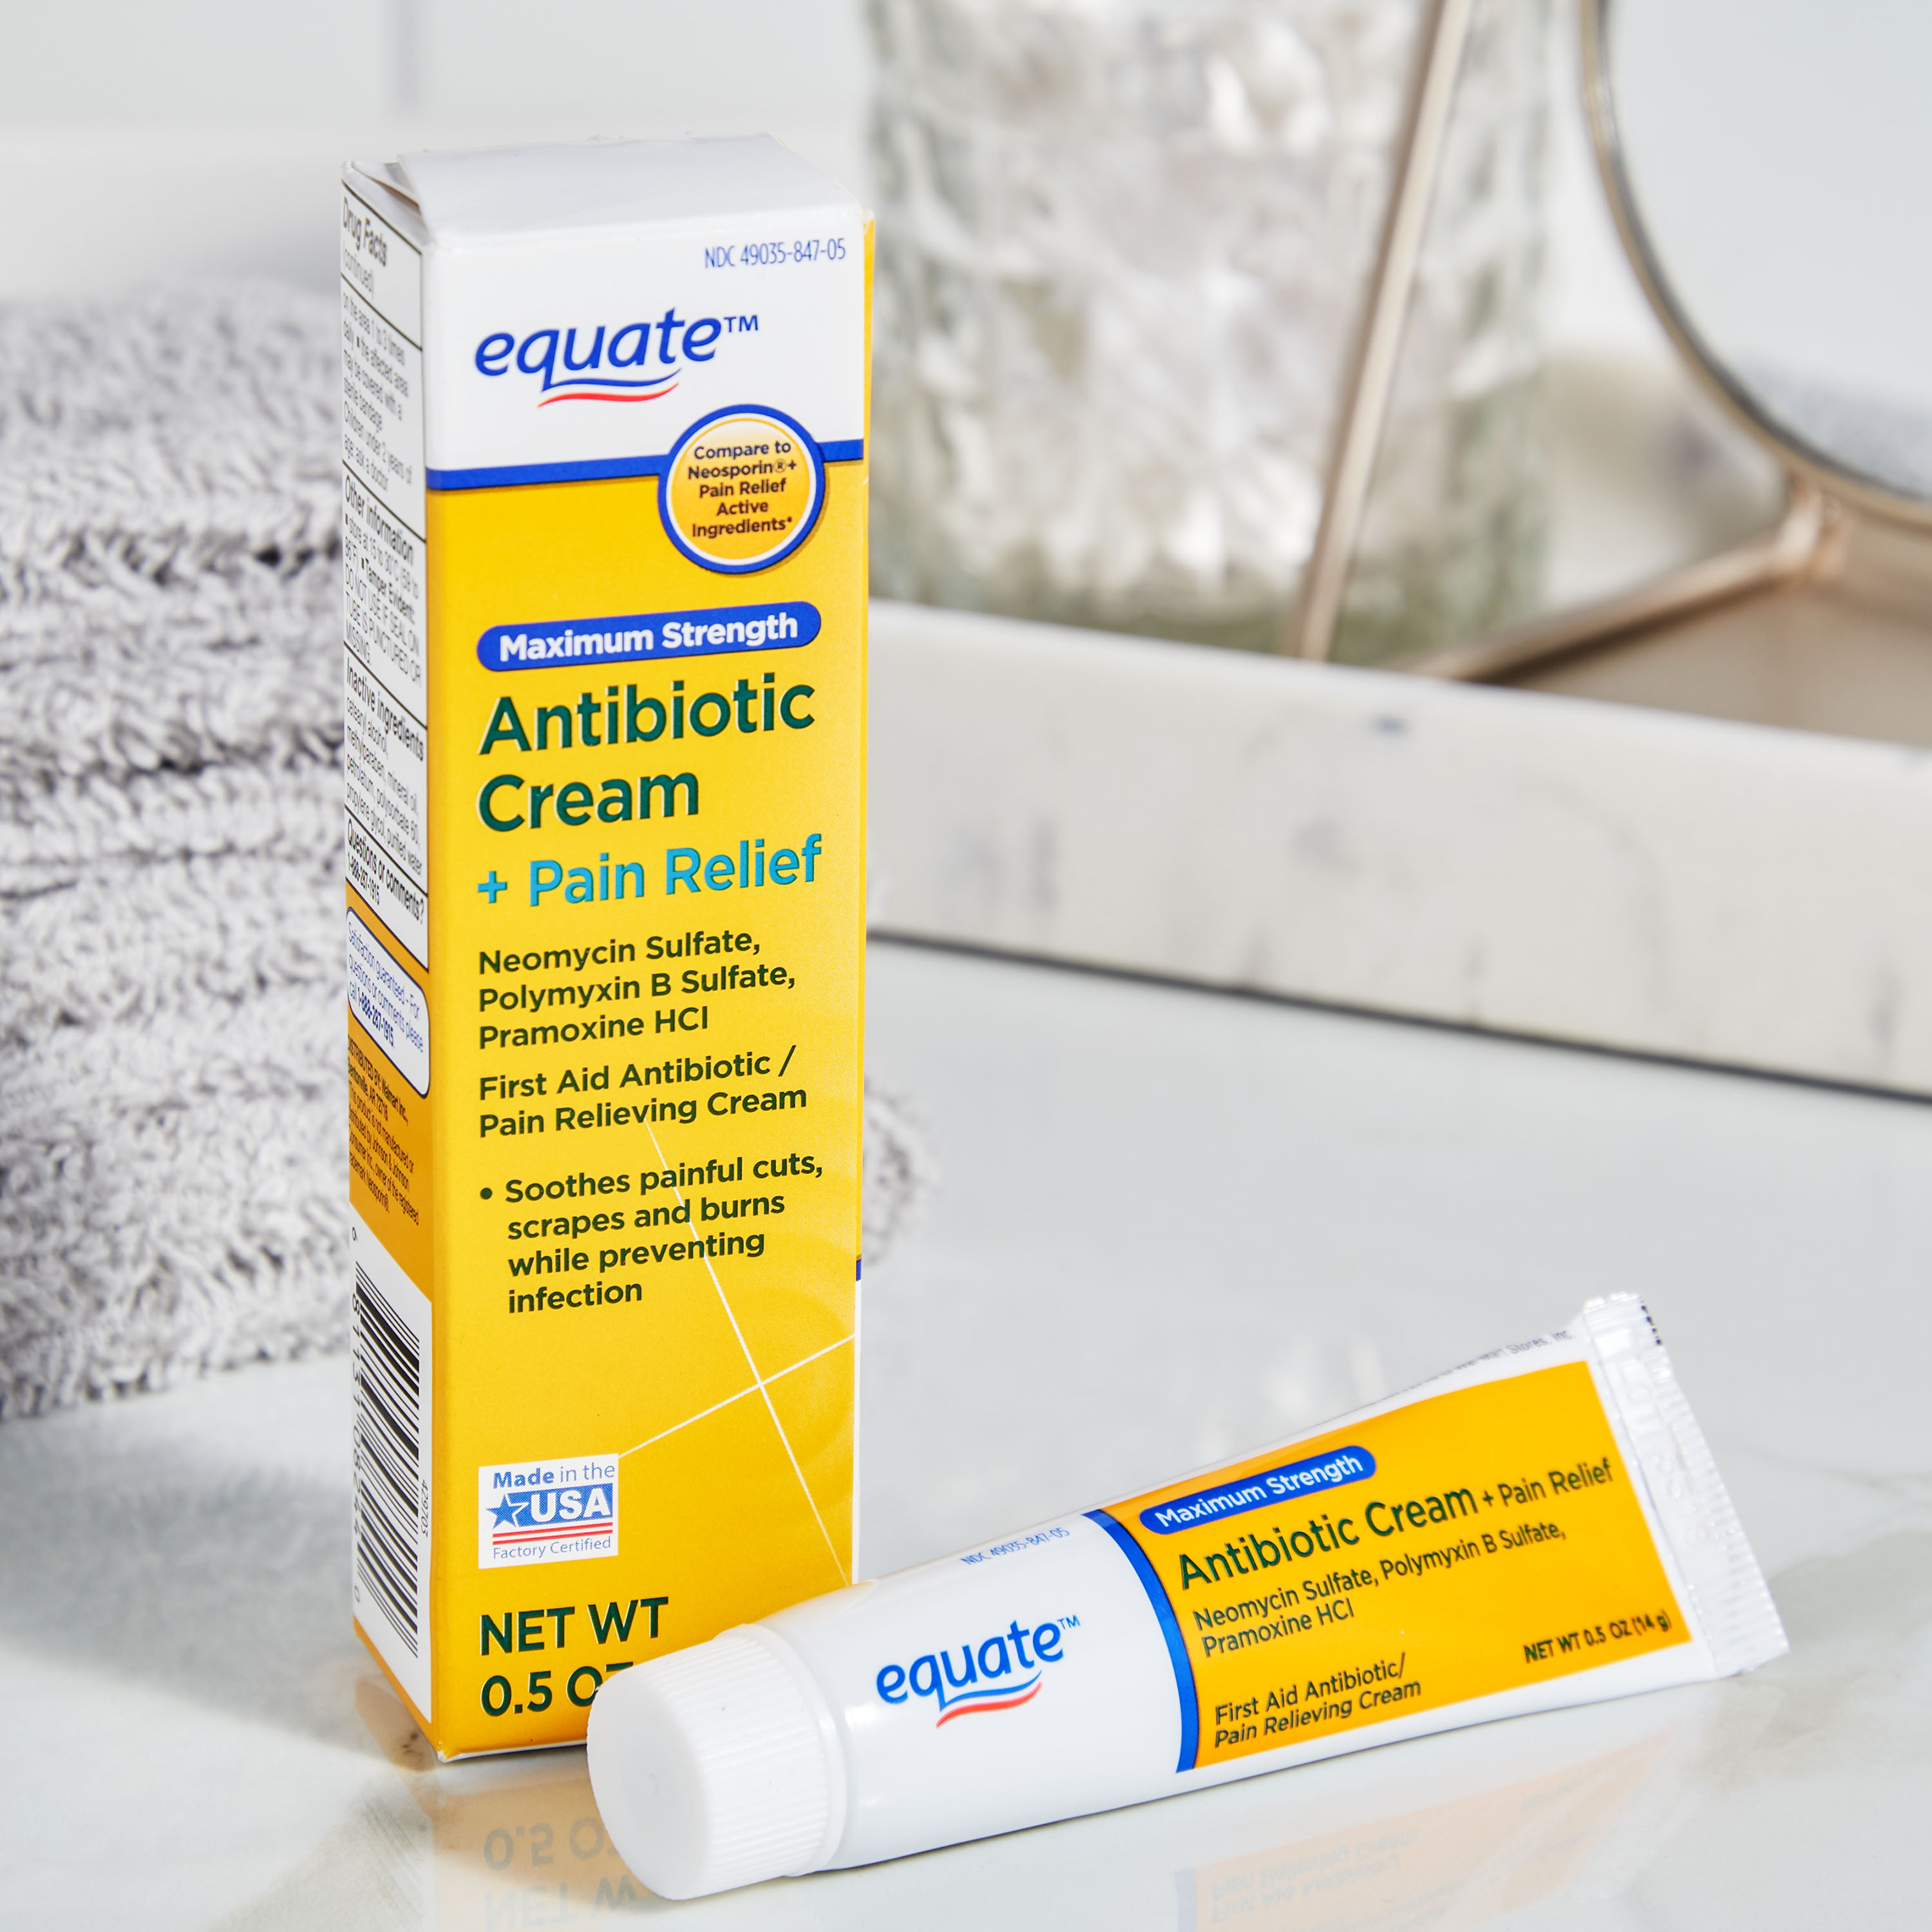 Equate Maximum Strength Antibiotic Cream + Pain Relief, 0.5 oz - image 3 of 9